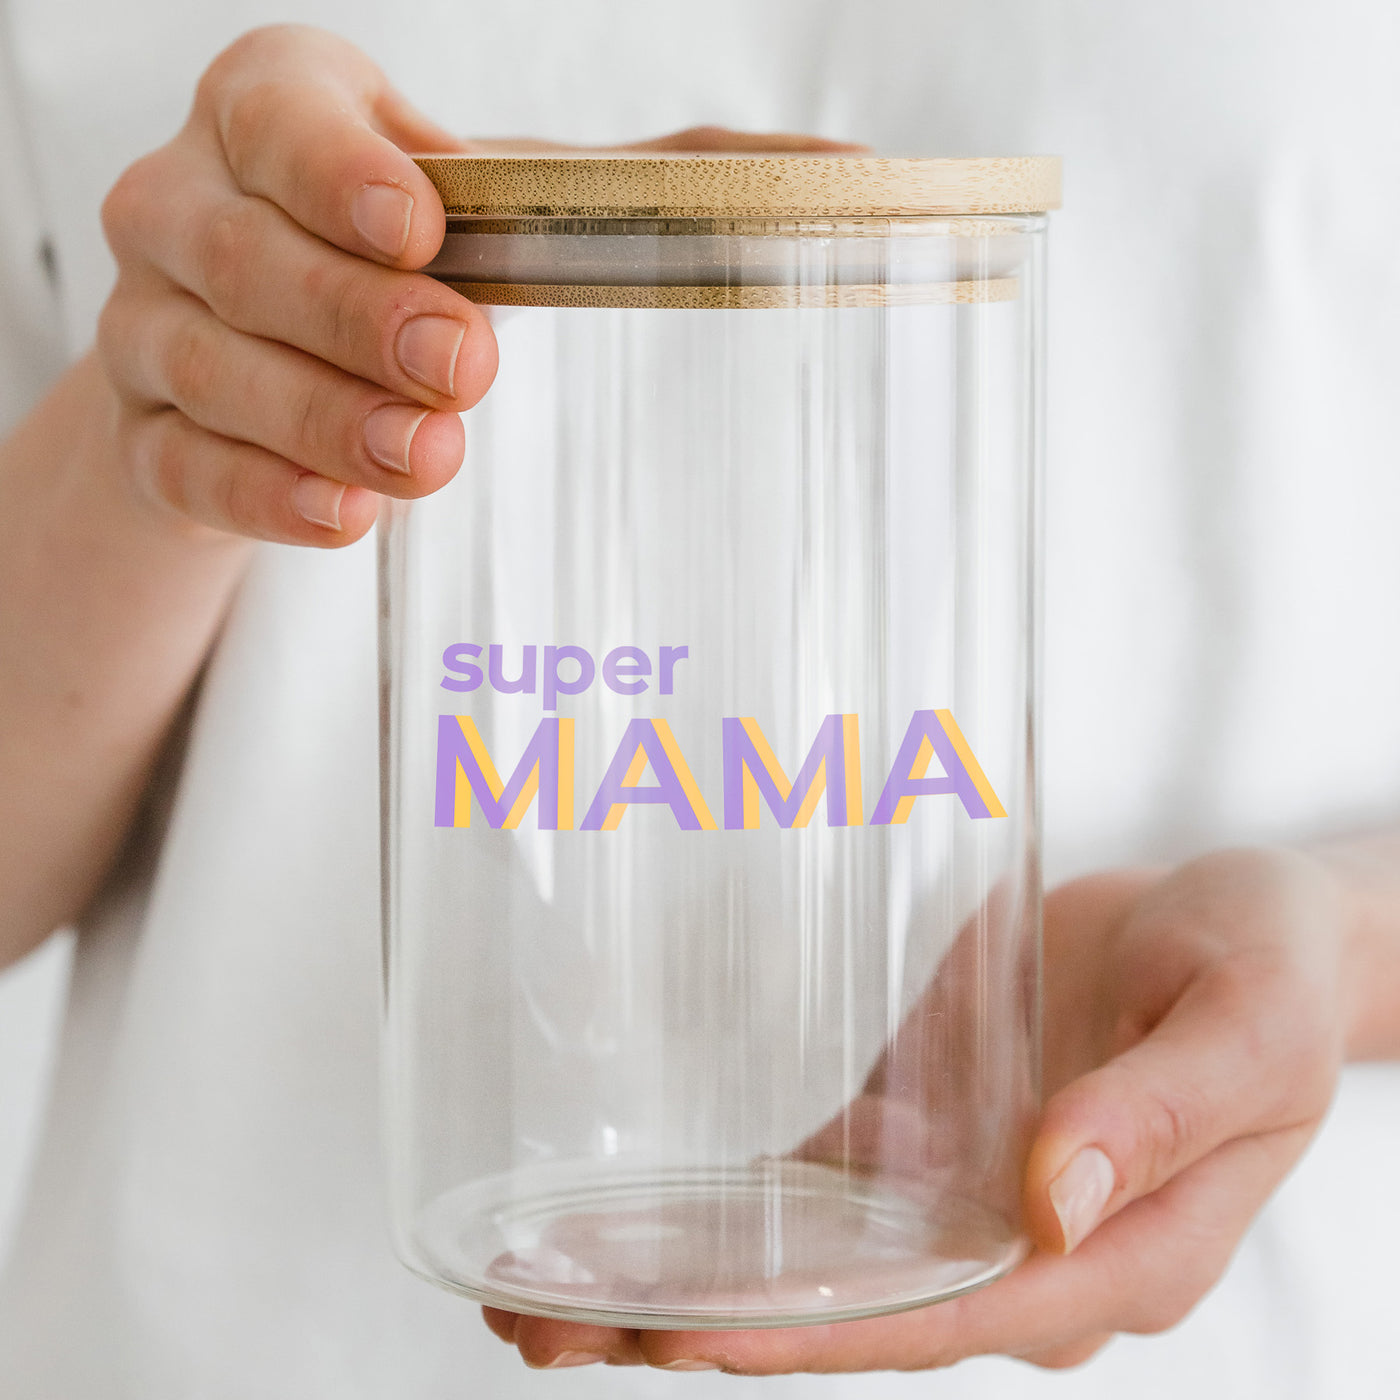 Super Mama Jar